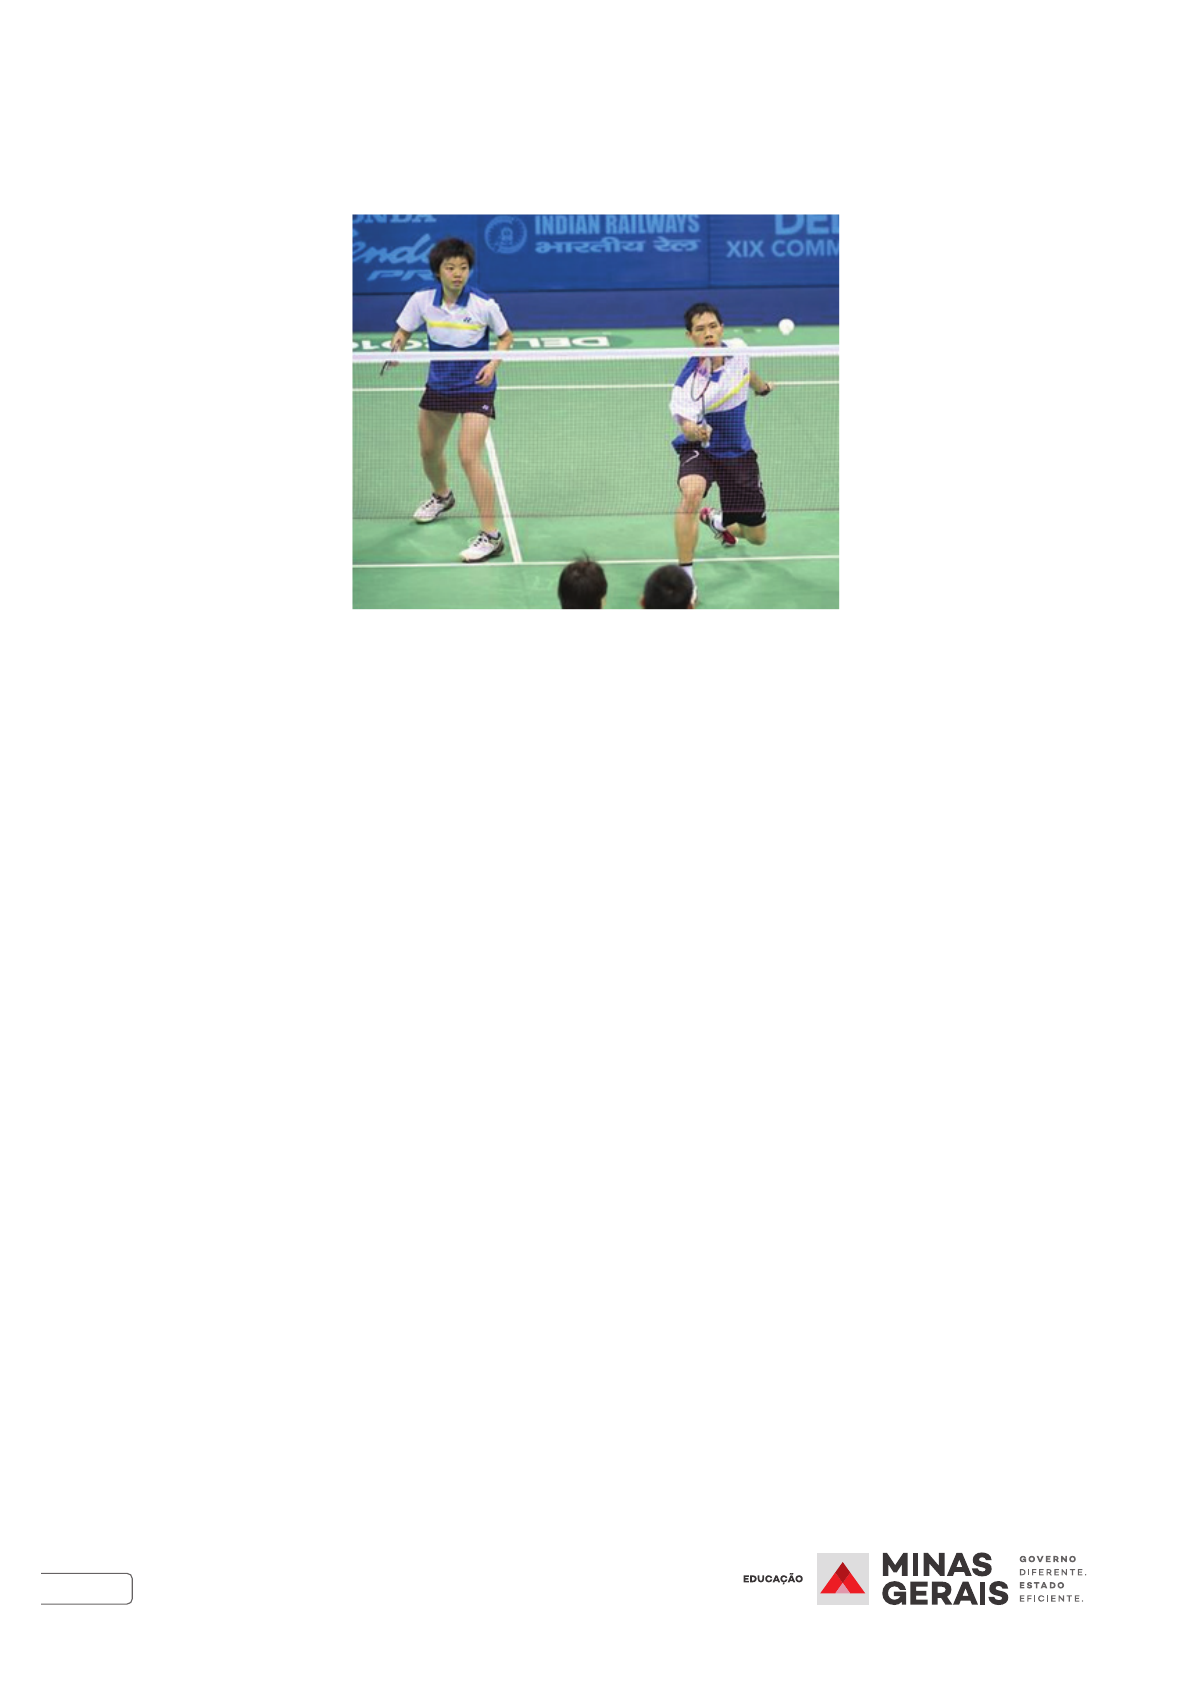 Captura aproximada da mão do tenista masculino segurando a bola de tênis e  o jogo de partida da raquete ou servindo a bola durante a partida